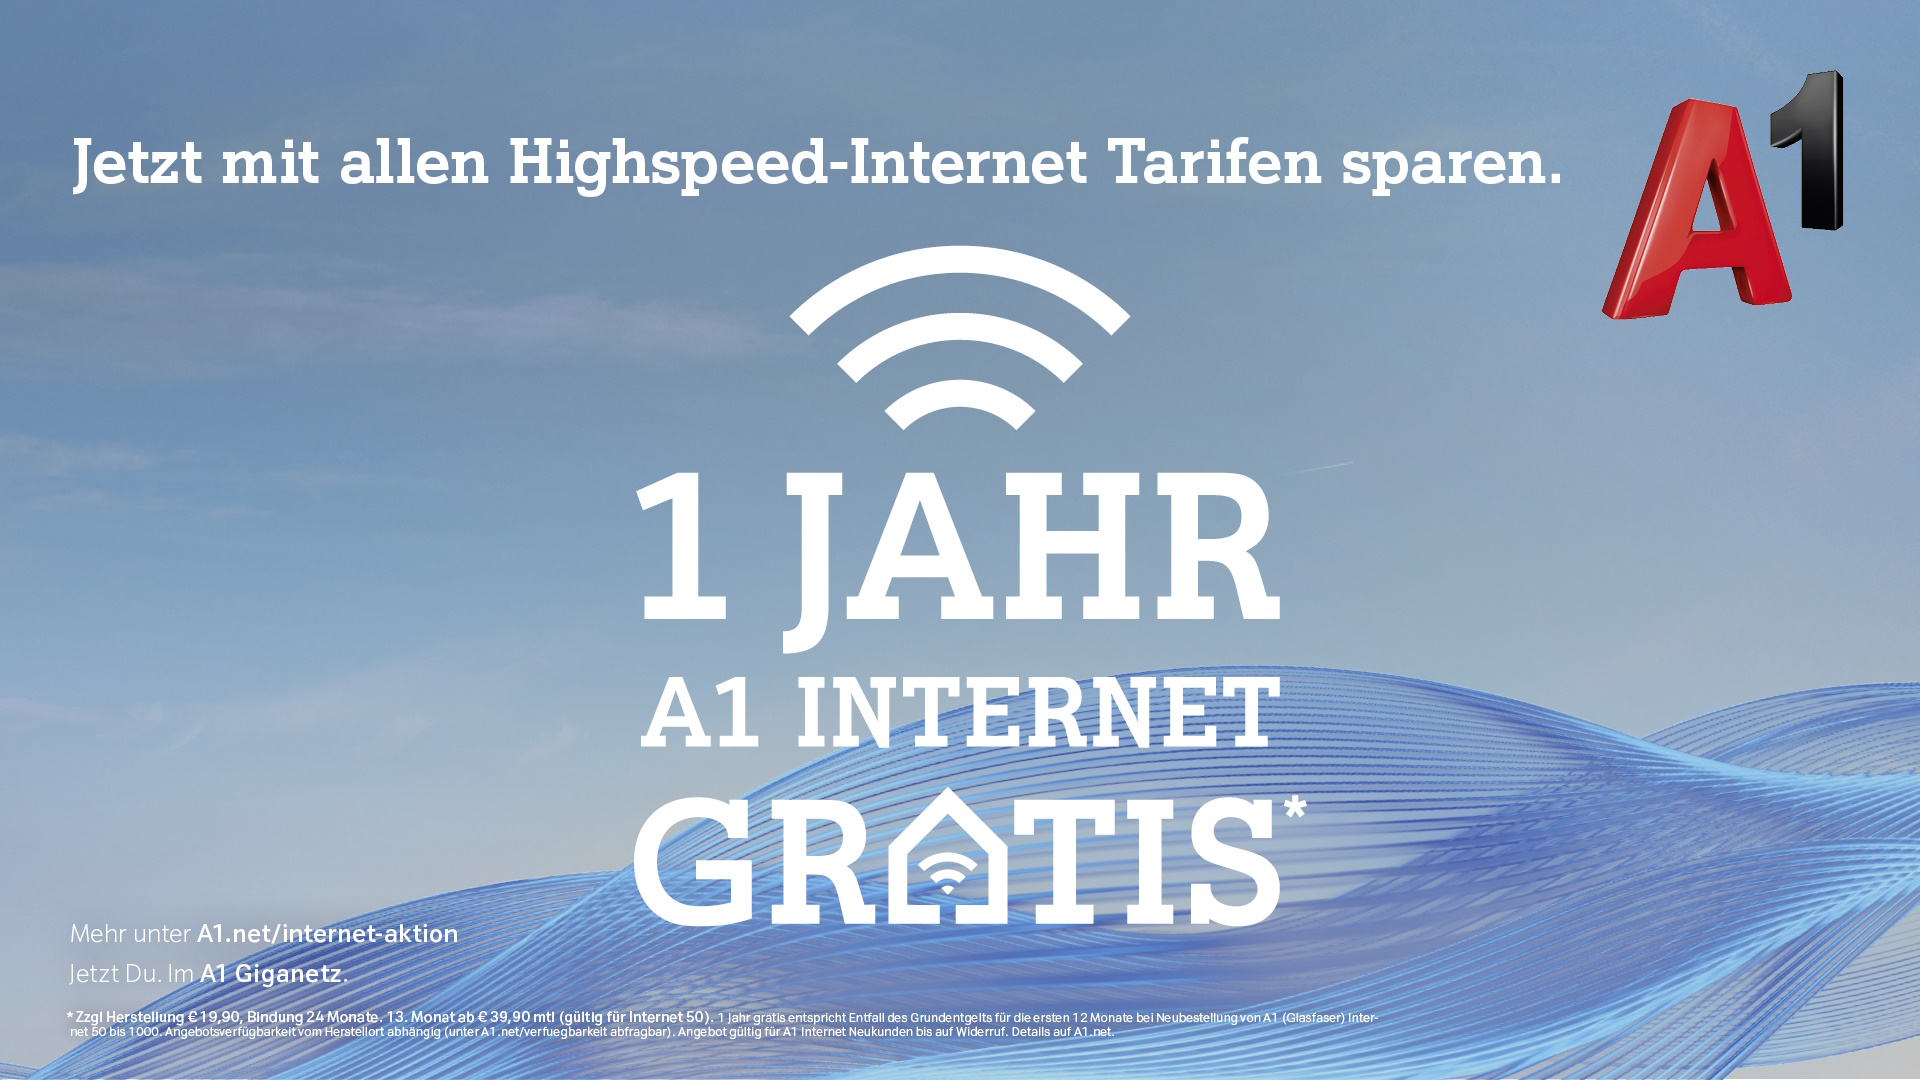 Jetzt mit allen Highspeed-Internet Tarifen sparen. 1 Jahr A1 Internet gratis - Mehr unter A1.net/internet-aktion